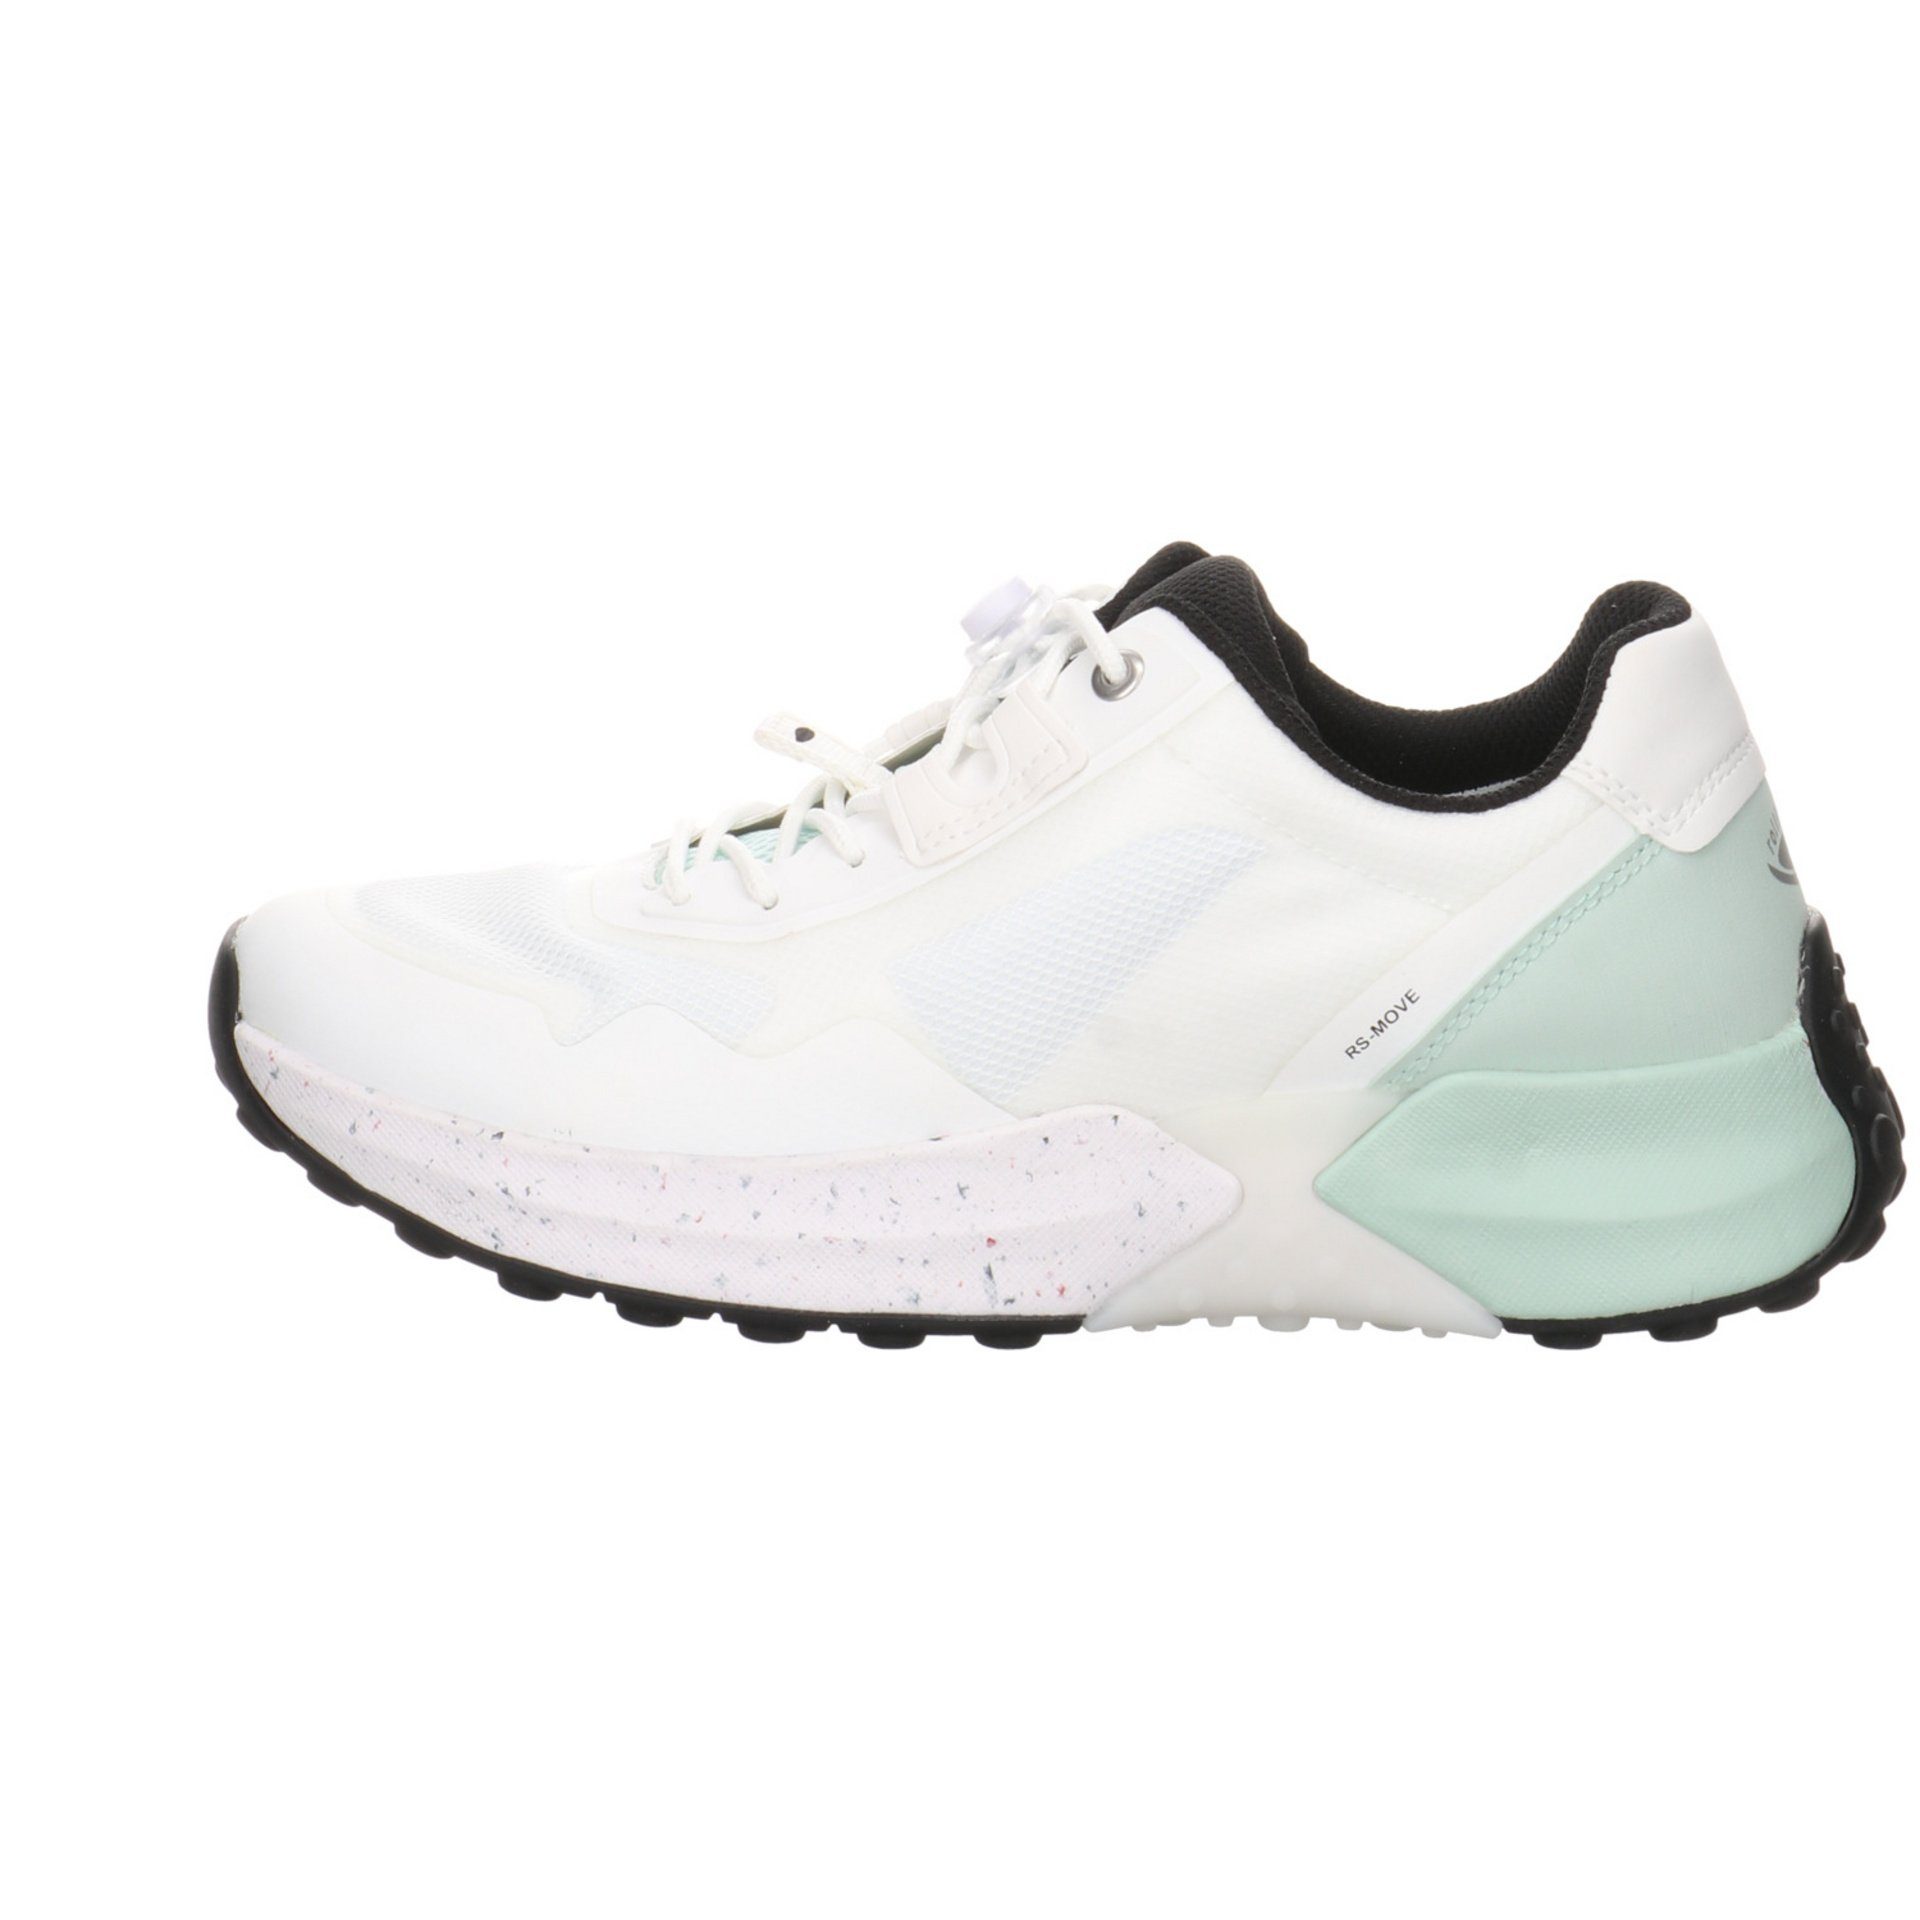 Gabor Damen Slipper Schuhe Rollingsoft Slip-On weiss/mint Synthetikkombination Sneaker Sneaker